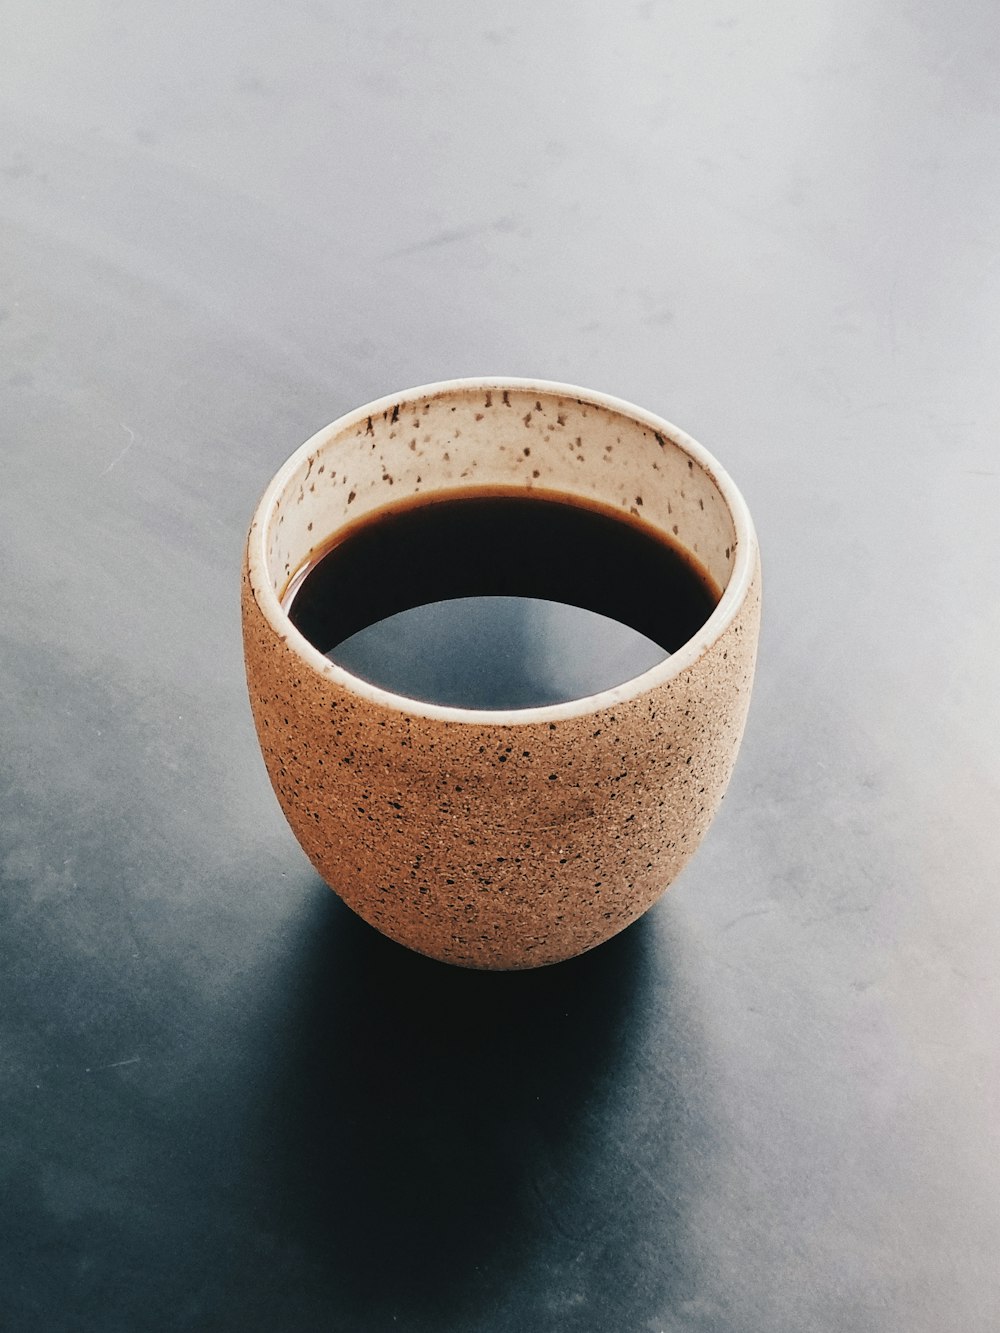 brown ceramic mug on white table